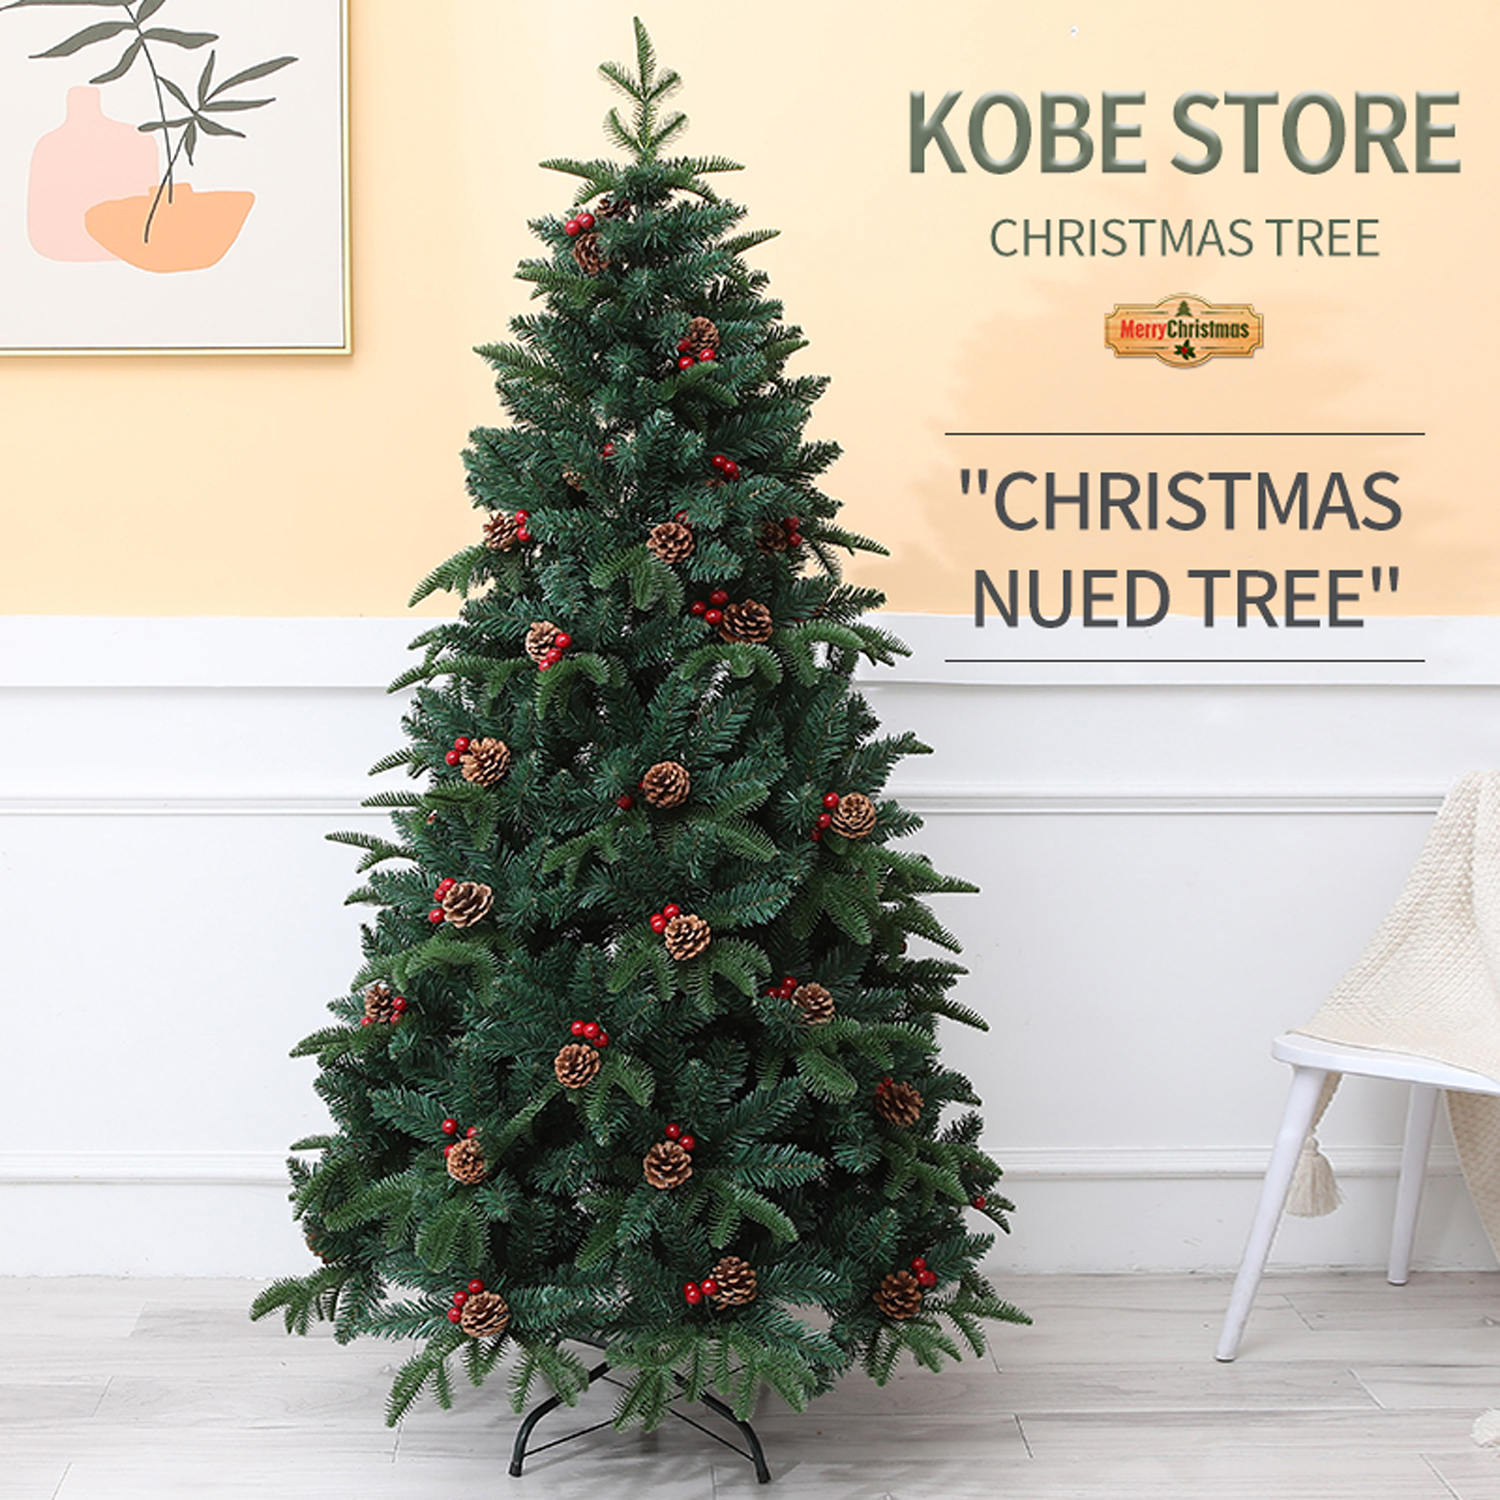 クリスマスツリー 150cm 松ぼっくり付き、赤い実付き、おしゃれな北欧風ツリー 枝大幅増量タイプ クリスマスツリー